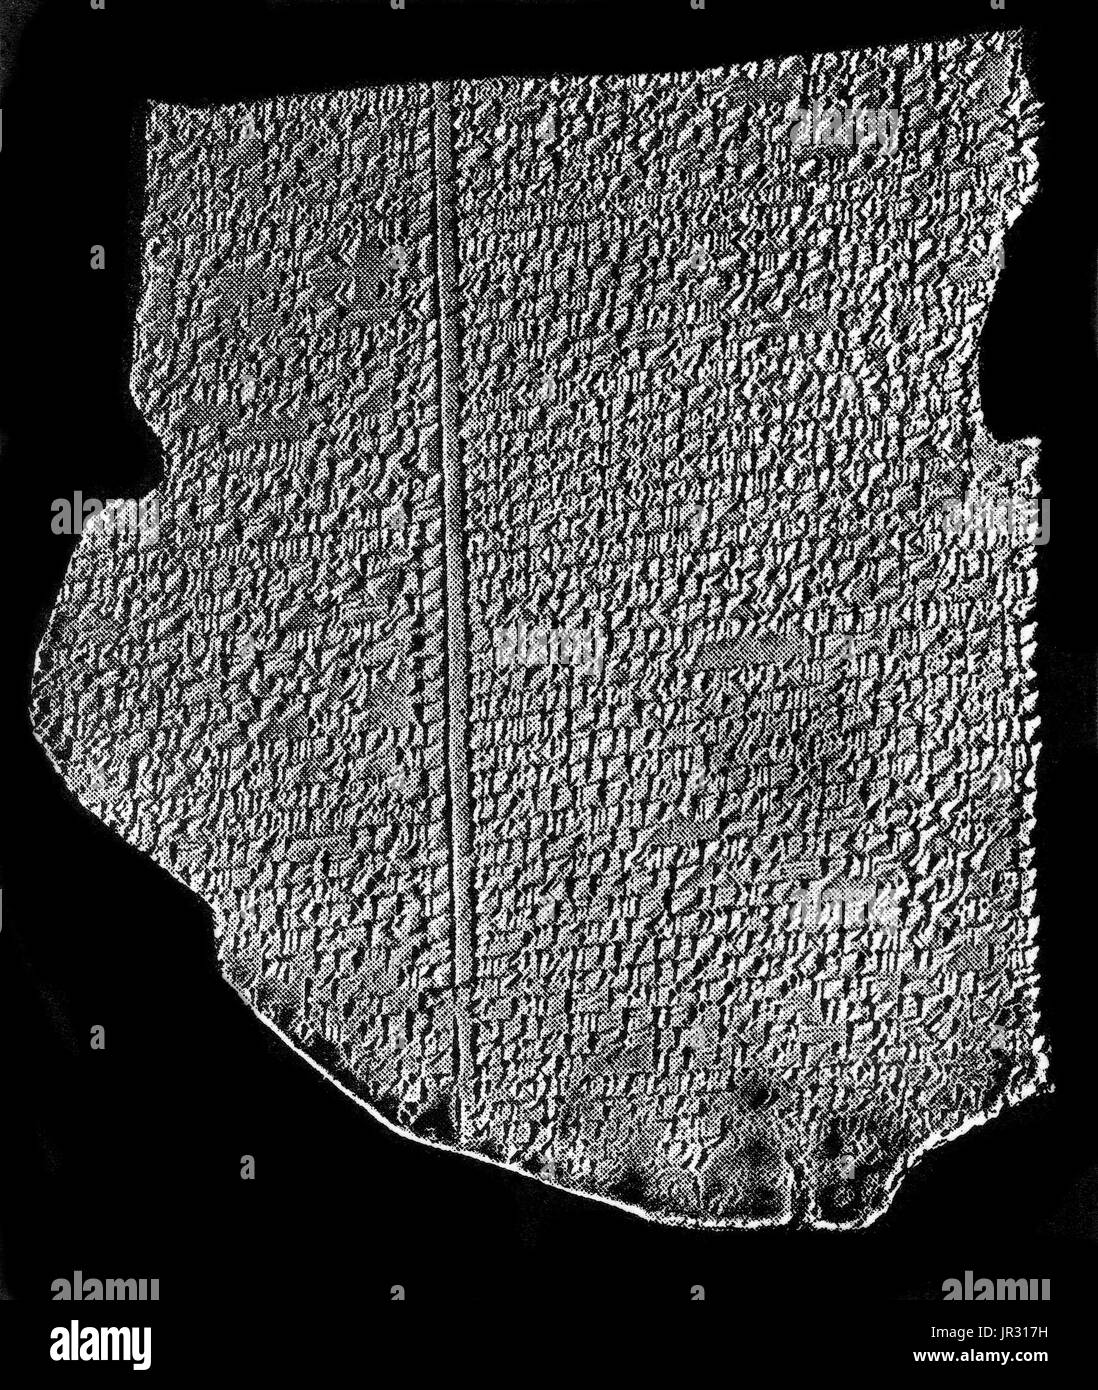 L'Amarna tablets sont une archive, écrit sur des tablettes d'argile, comprenant surtout de la correspondance diplomatique entre l'administration égyptienne et ses représentants en Canaan et Amurru sous le Nouvel Empire. Les lettres d'Amarna sont inhabituelles à la recherche Égyptologiques, parce qu'ils sont pour la plupart écrits en akkadien cunéiforme, le système d'écriture de l'ancienne Mésopotamie, plutôt que celle de l'Égypte ancienne. La correspondance écrite s'étend sur une période d'au plus trente ans. Les lettres d'Amarna sont d'une grande importance pour les études bibliques, ainsi que la linguistique sémitique, puisqu'ils faire la lumière sur les Banque D'Images